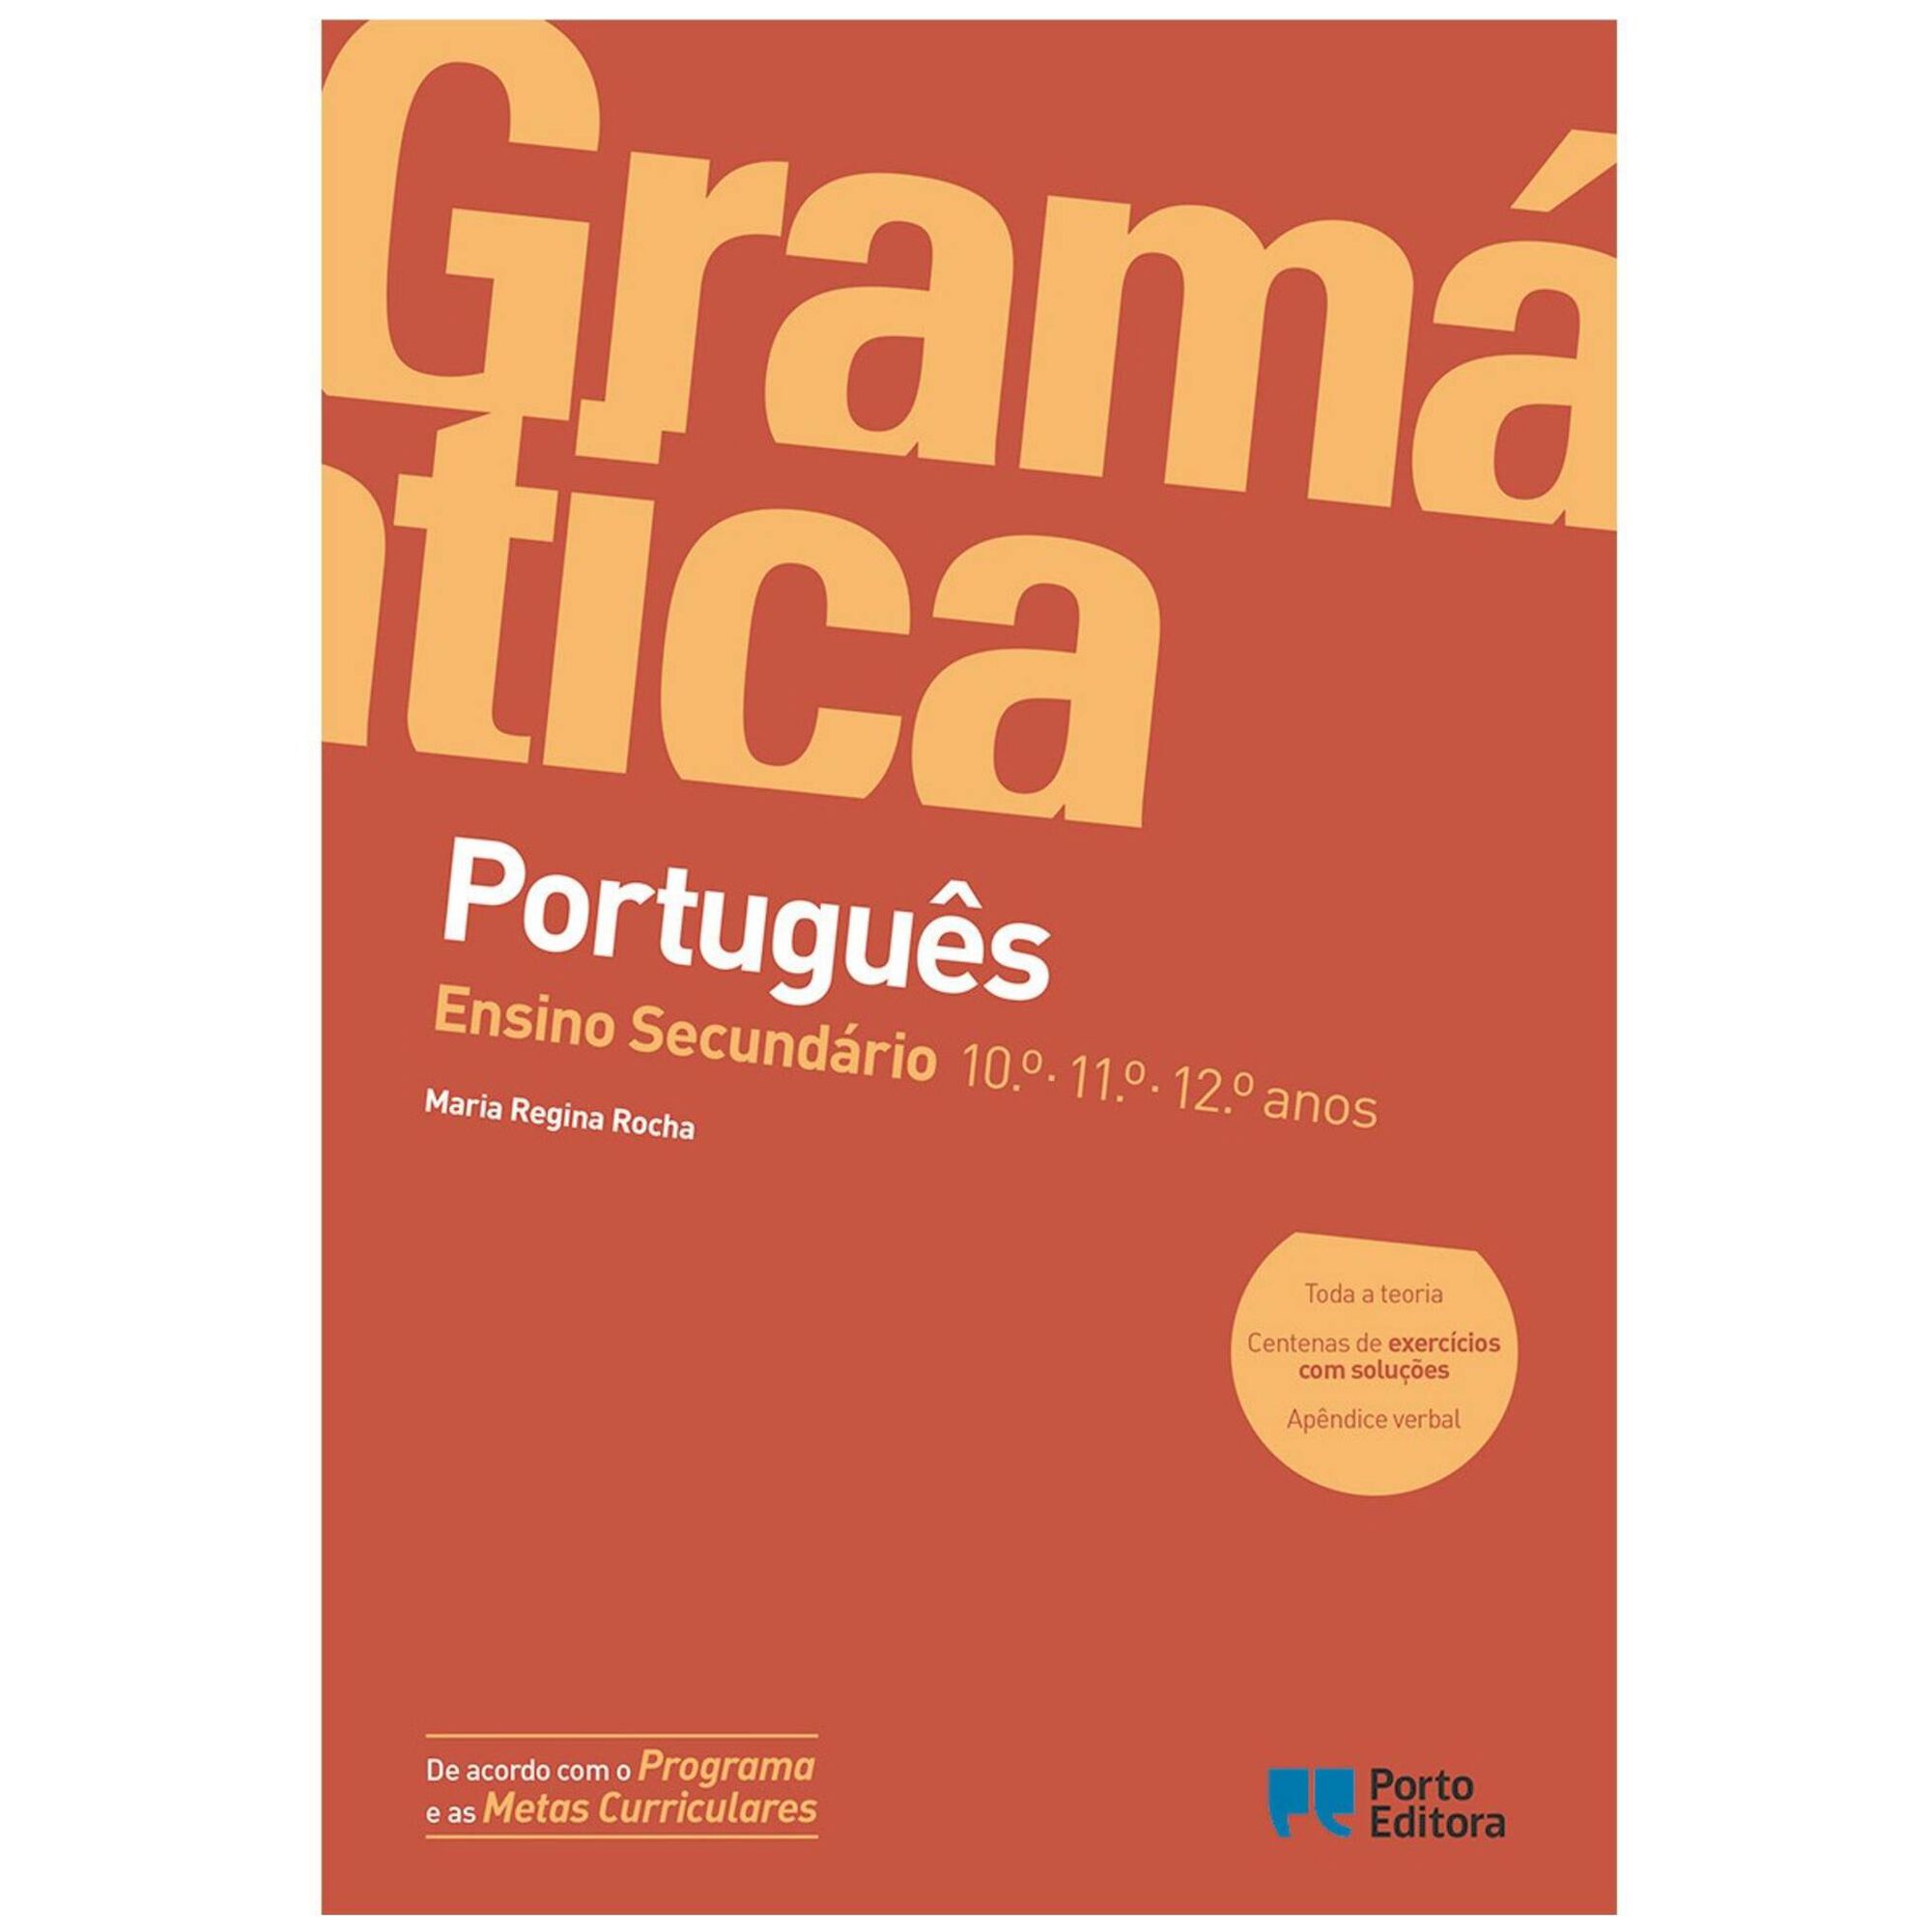 Gramática de Português - Ensino Secundário